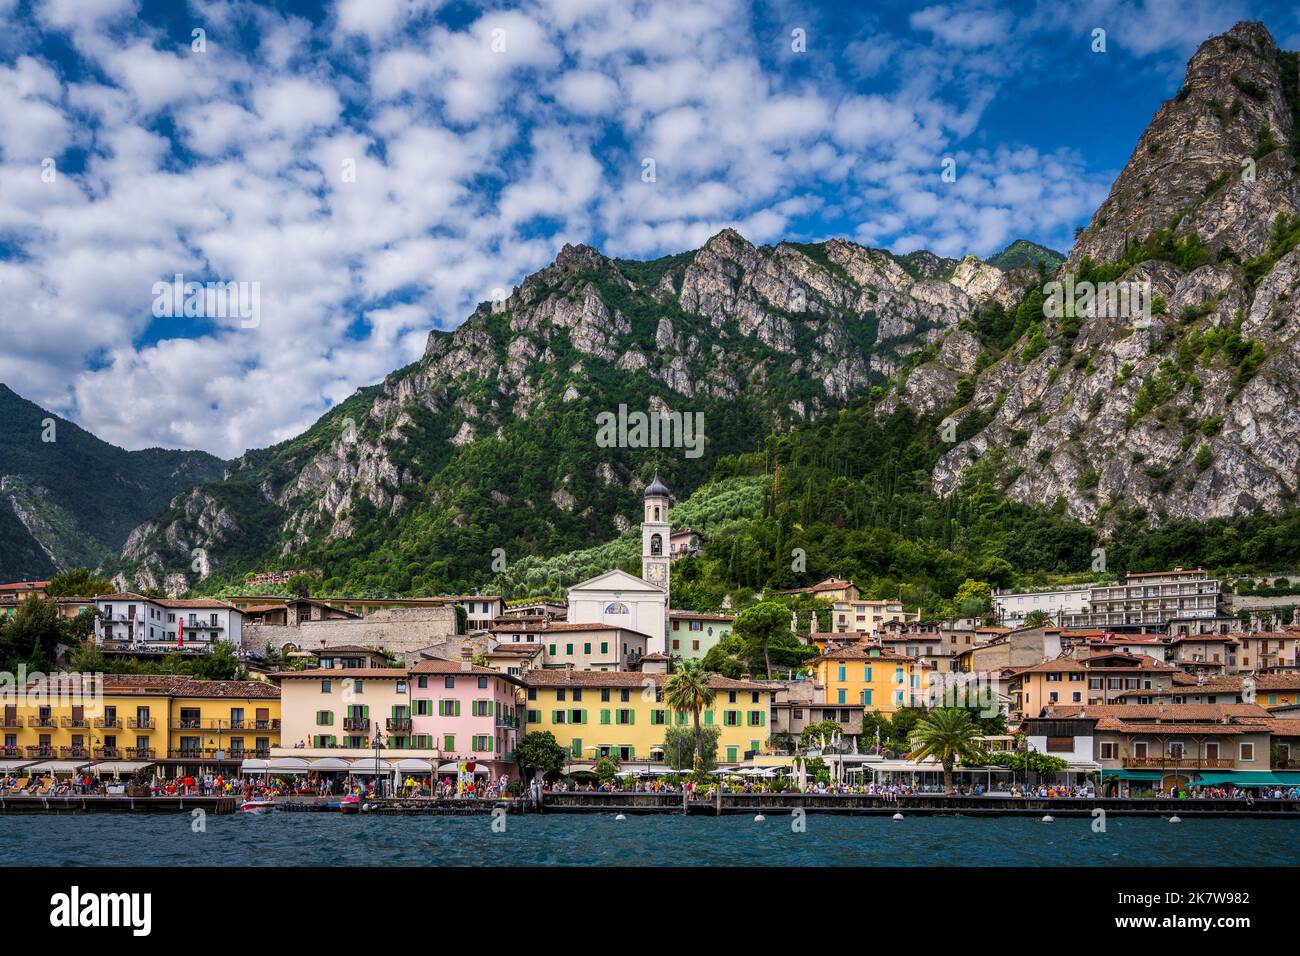 Vue sur le front de mer de Limone sul Garda, lac de Garde, Italie Banque D'Images